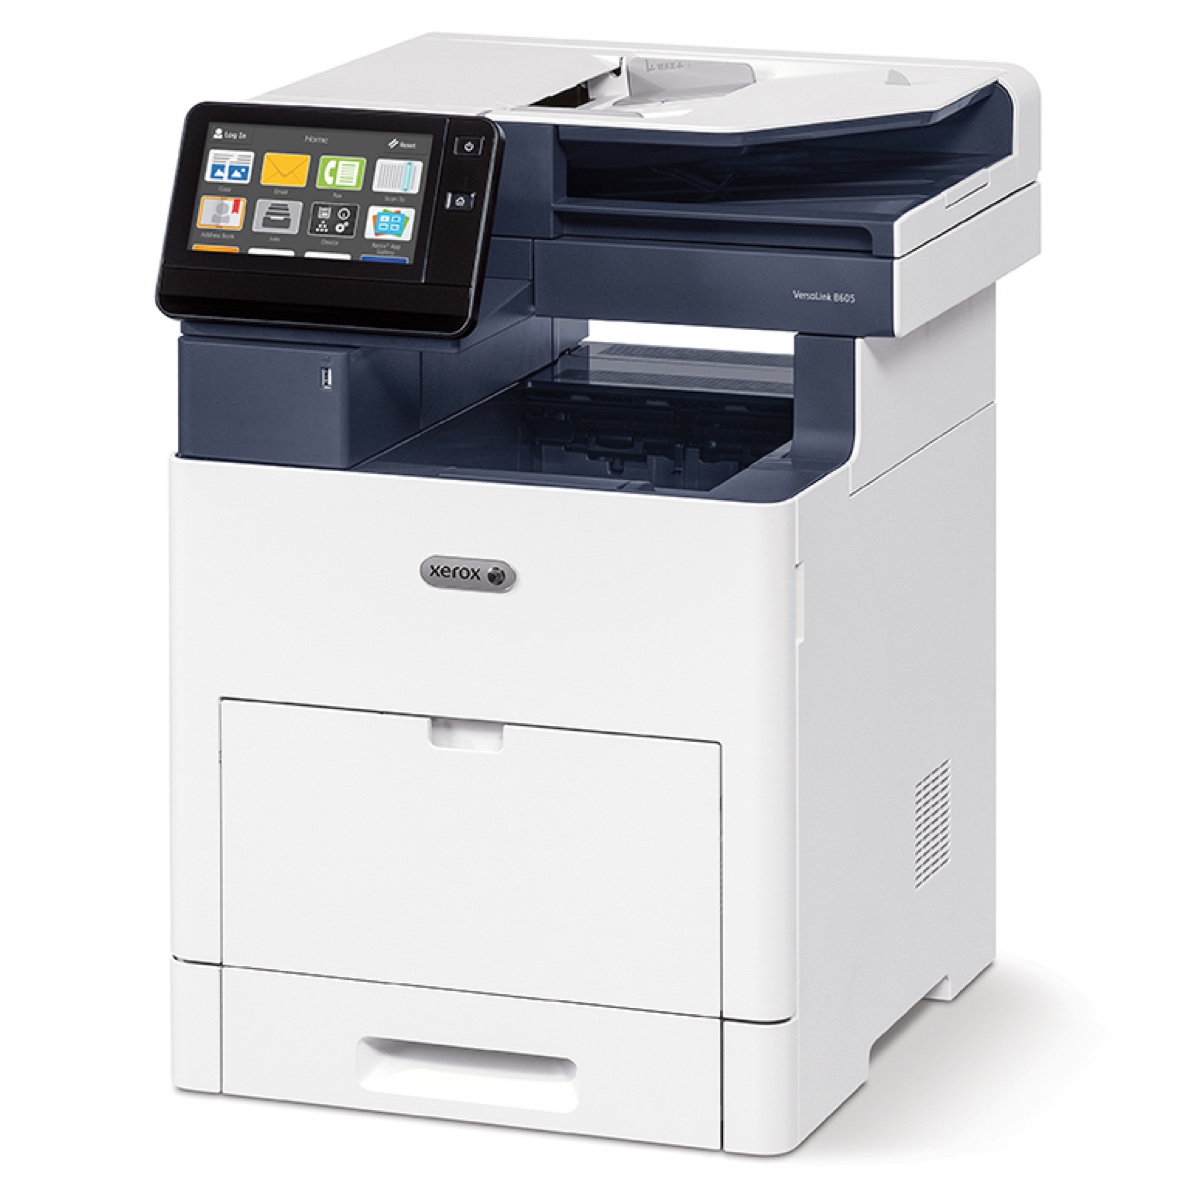 Xerox Copiers:  The Xerox VersaLink B615/XL Copier